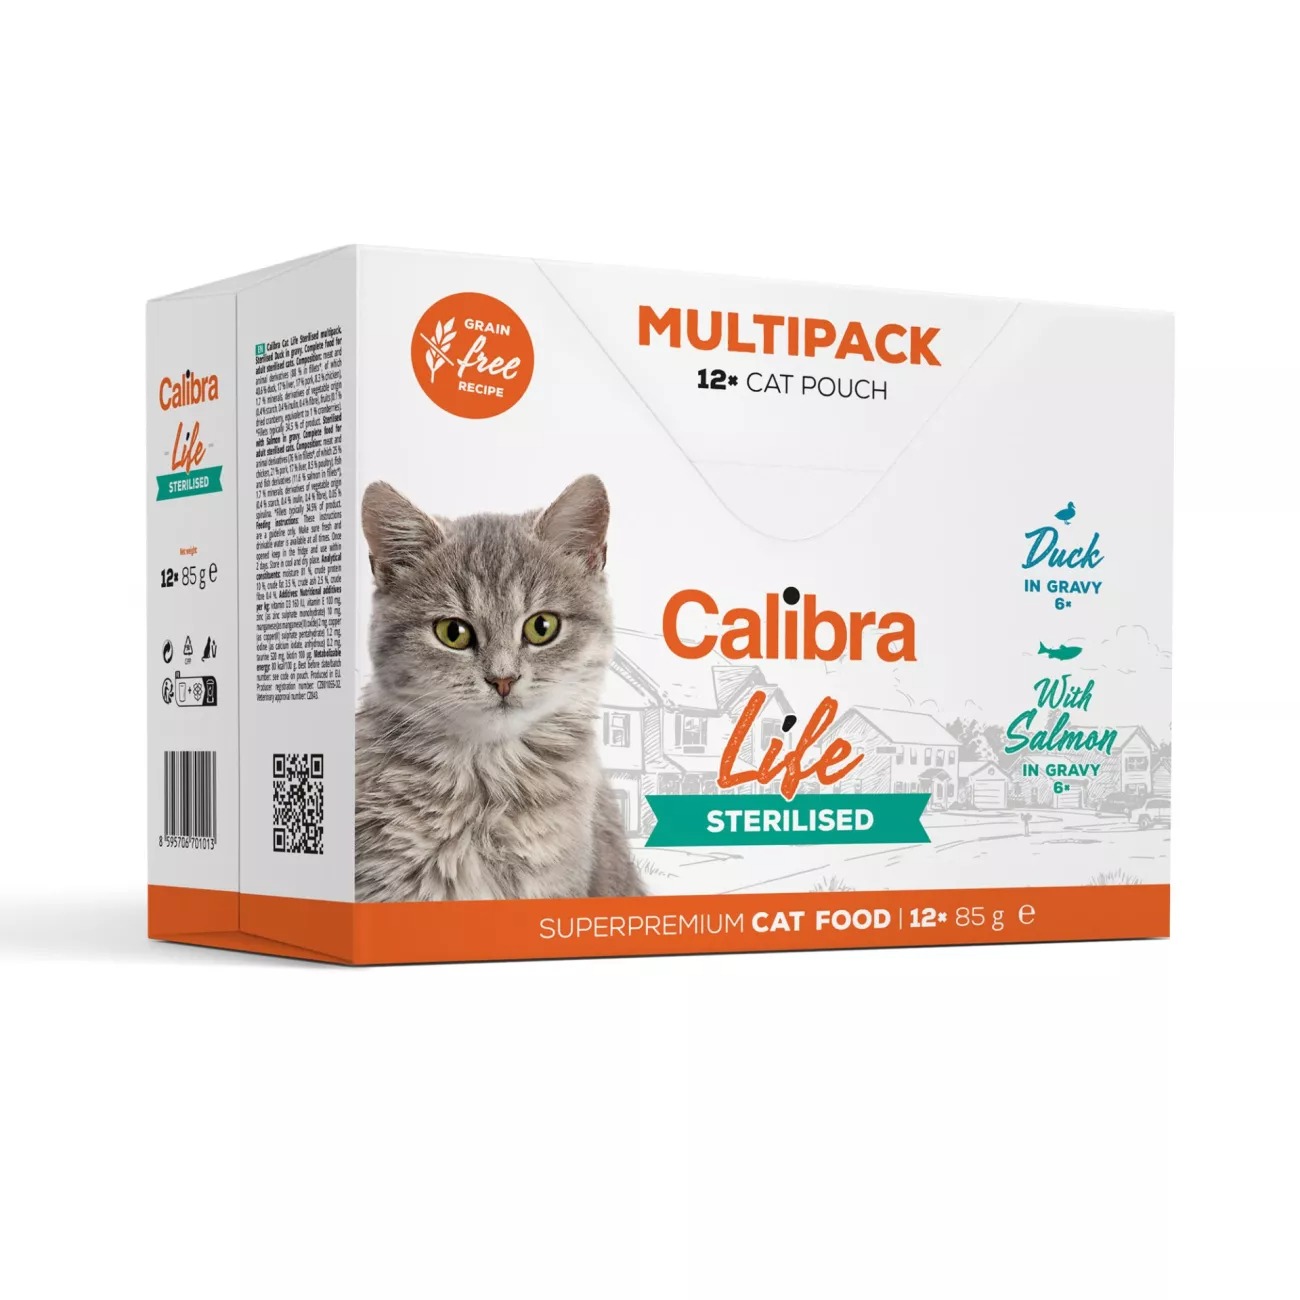 Calibra Cat Life kaps. Sterilised Multipack in gravy 12x85g